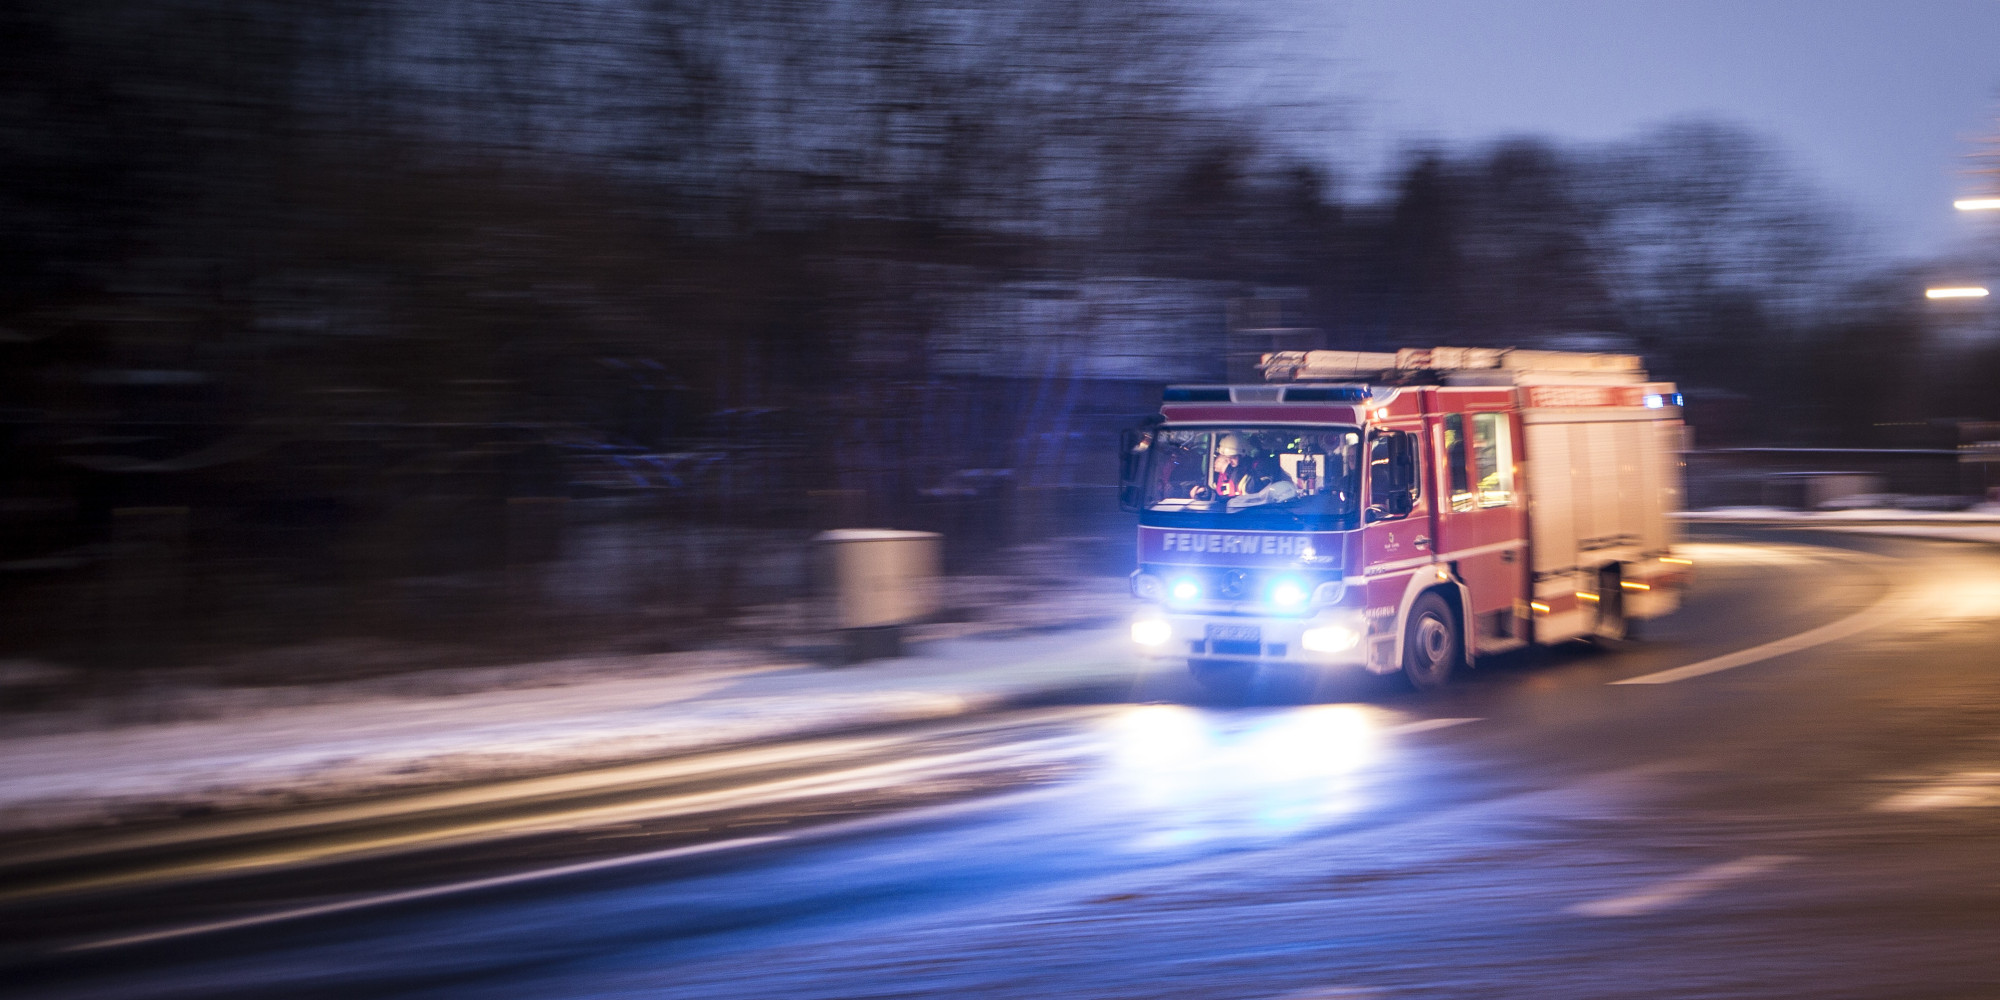 Notruf per Whatsapp: Feuerwehr beobachtet gefährlichen Trend - Huffington Post Deutschland